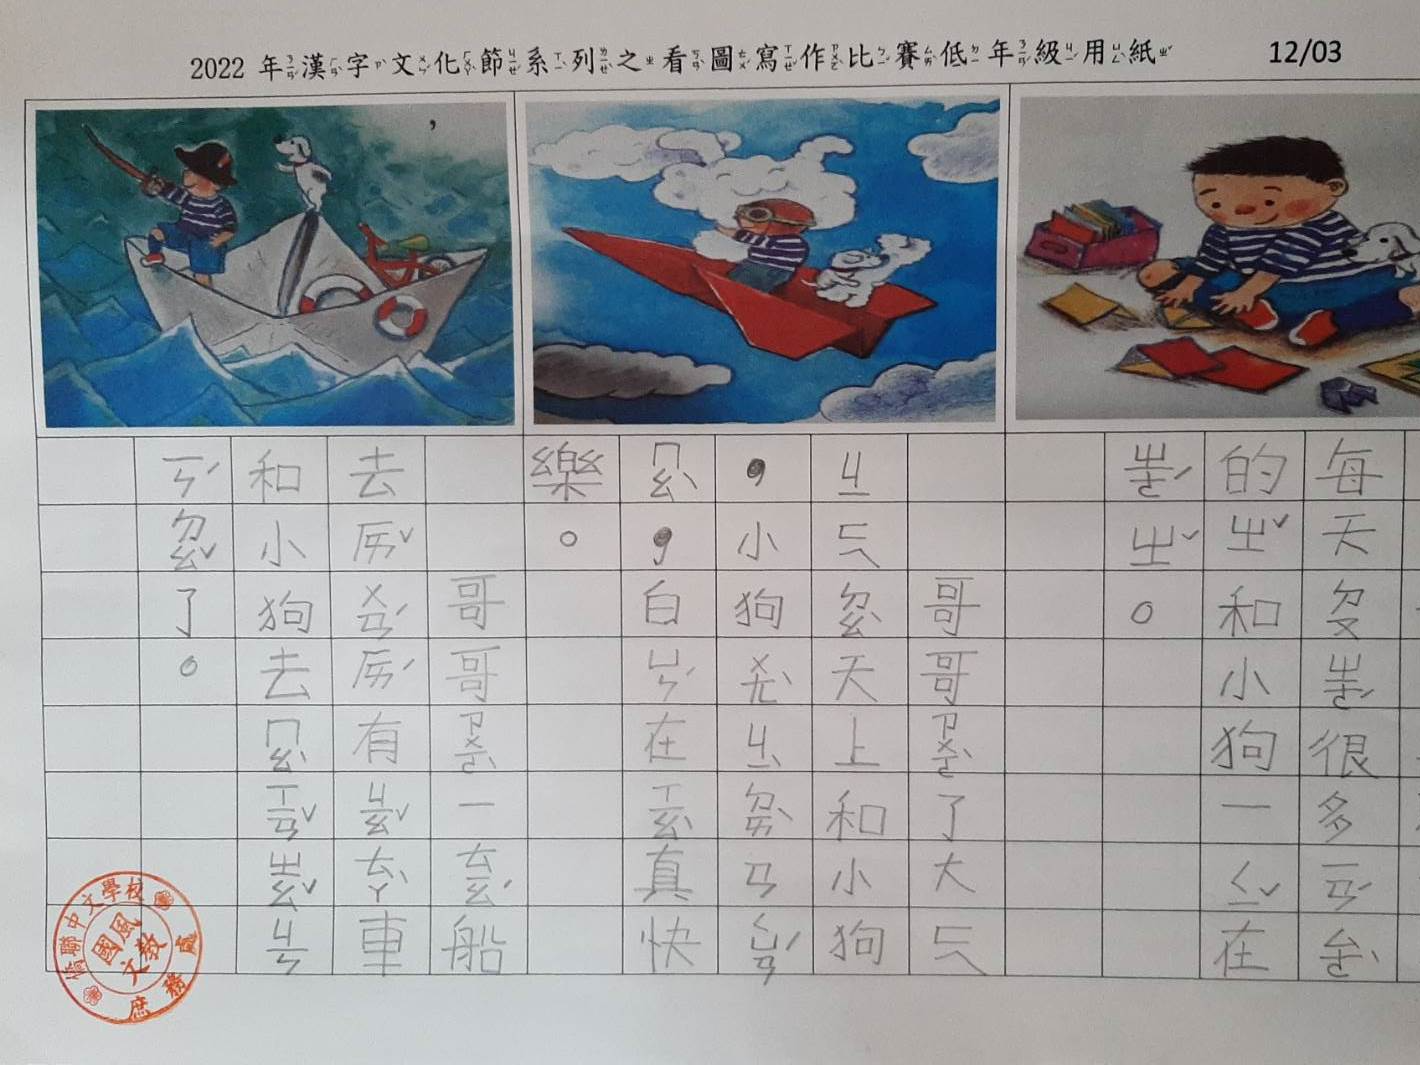 國風僑聯中文學校2022年漢字文化節系列--看圖寫作比賽圖片